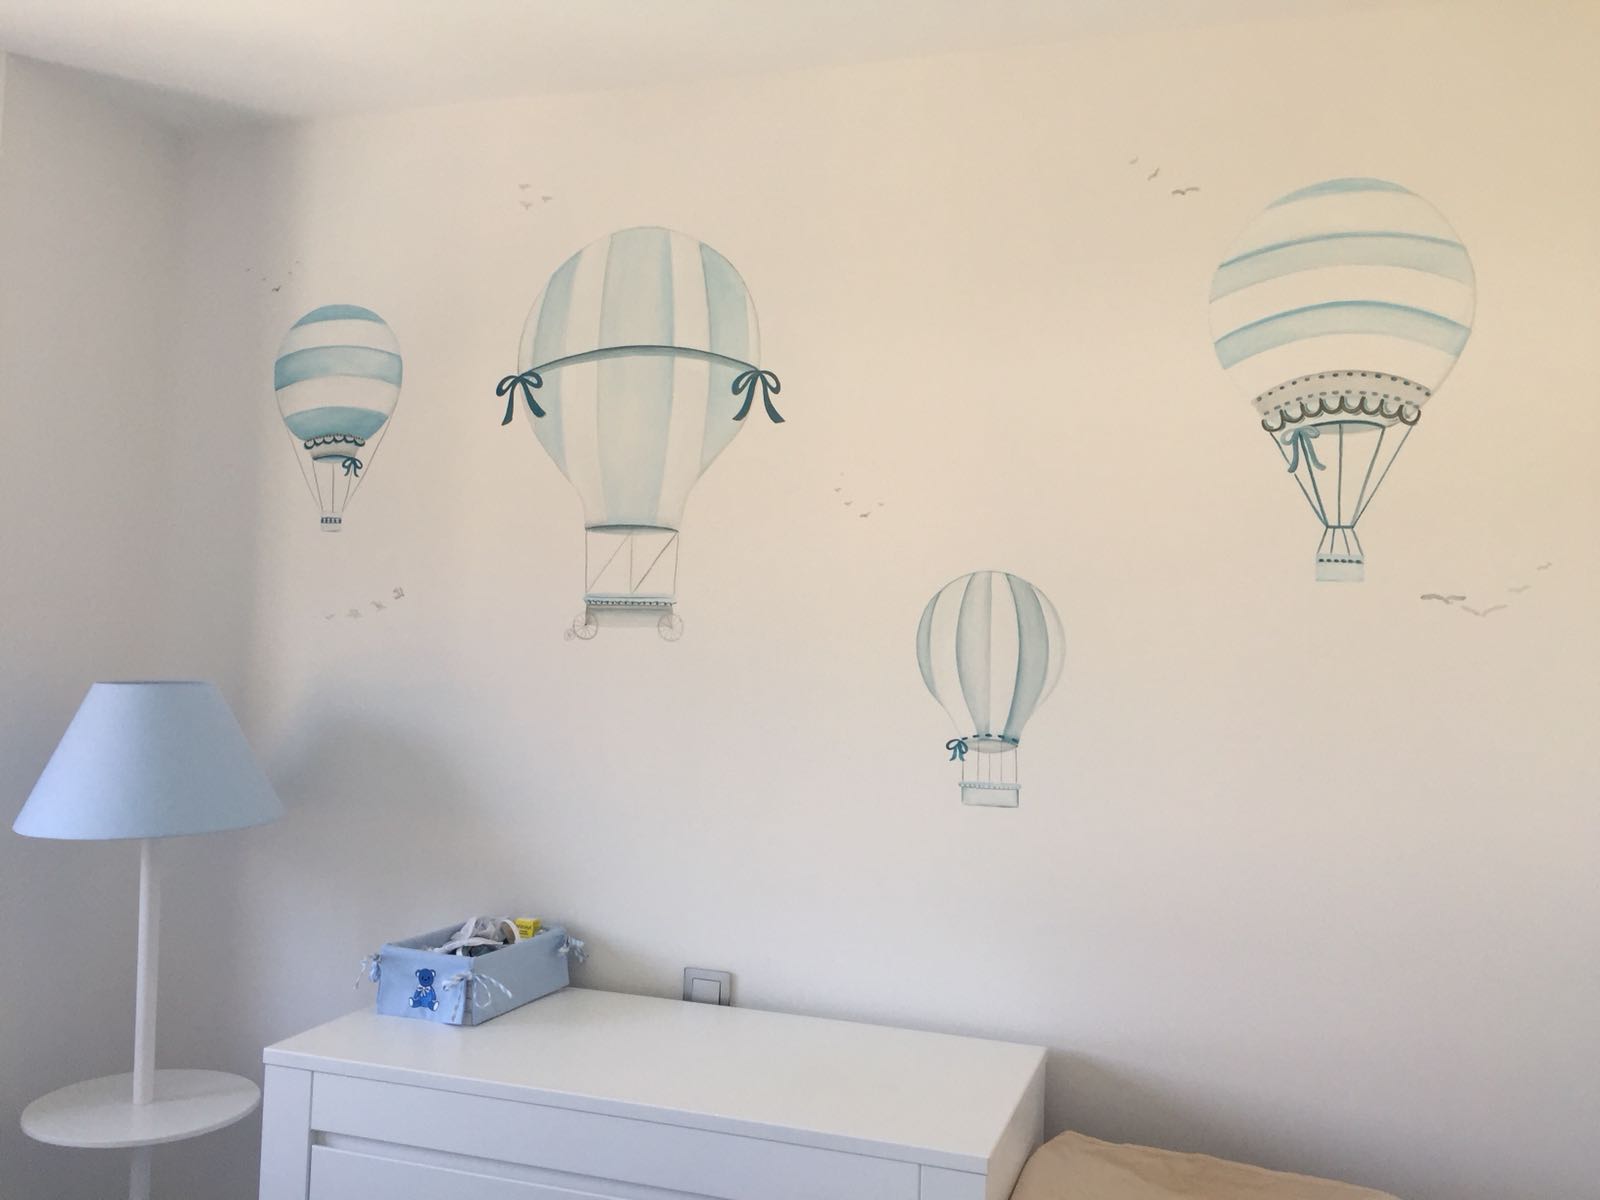 pared con globos aerostaticos en tonos grises y azules